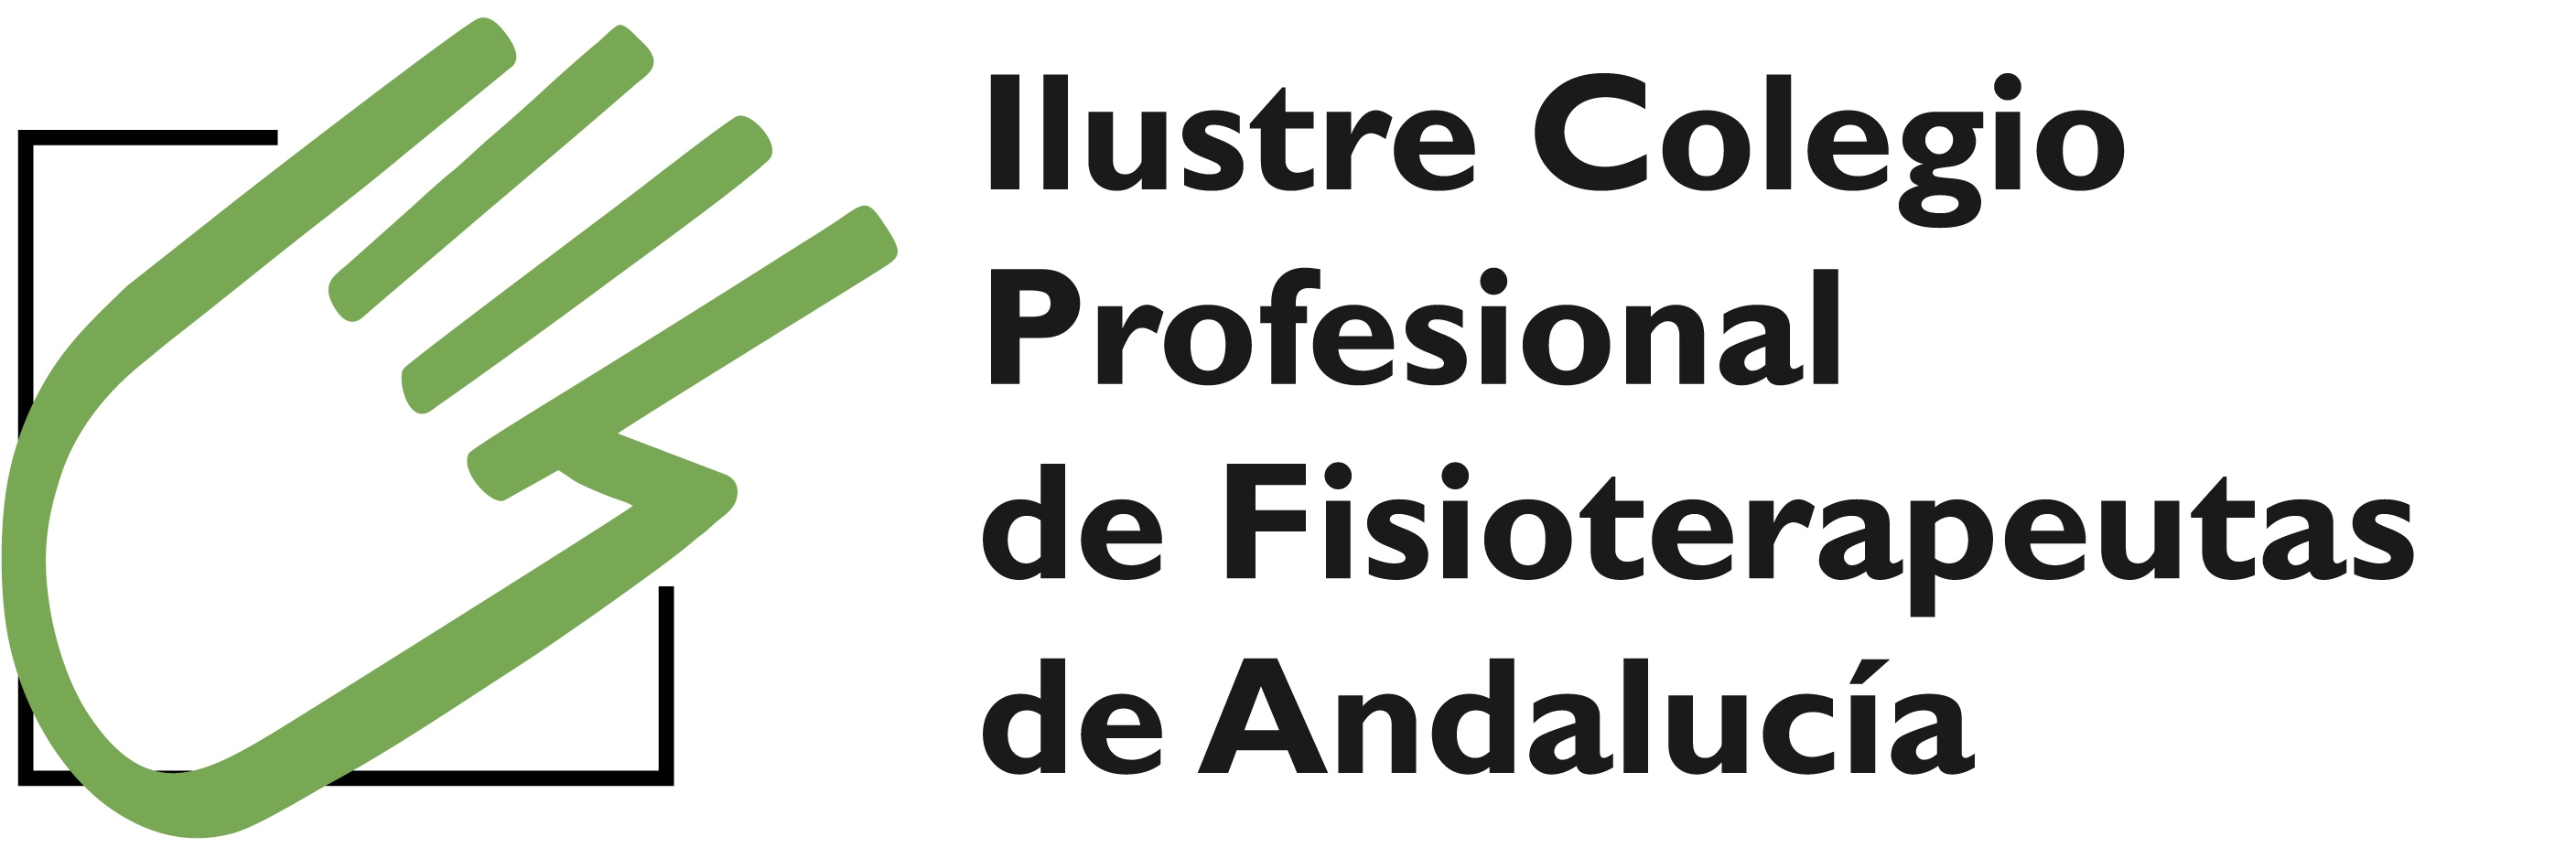 Ilustre Colegio Profesional de Fisioterapeutas de Andalucía.